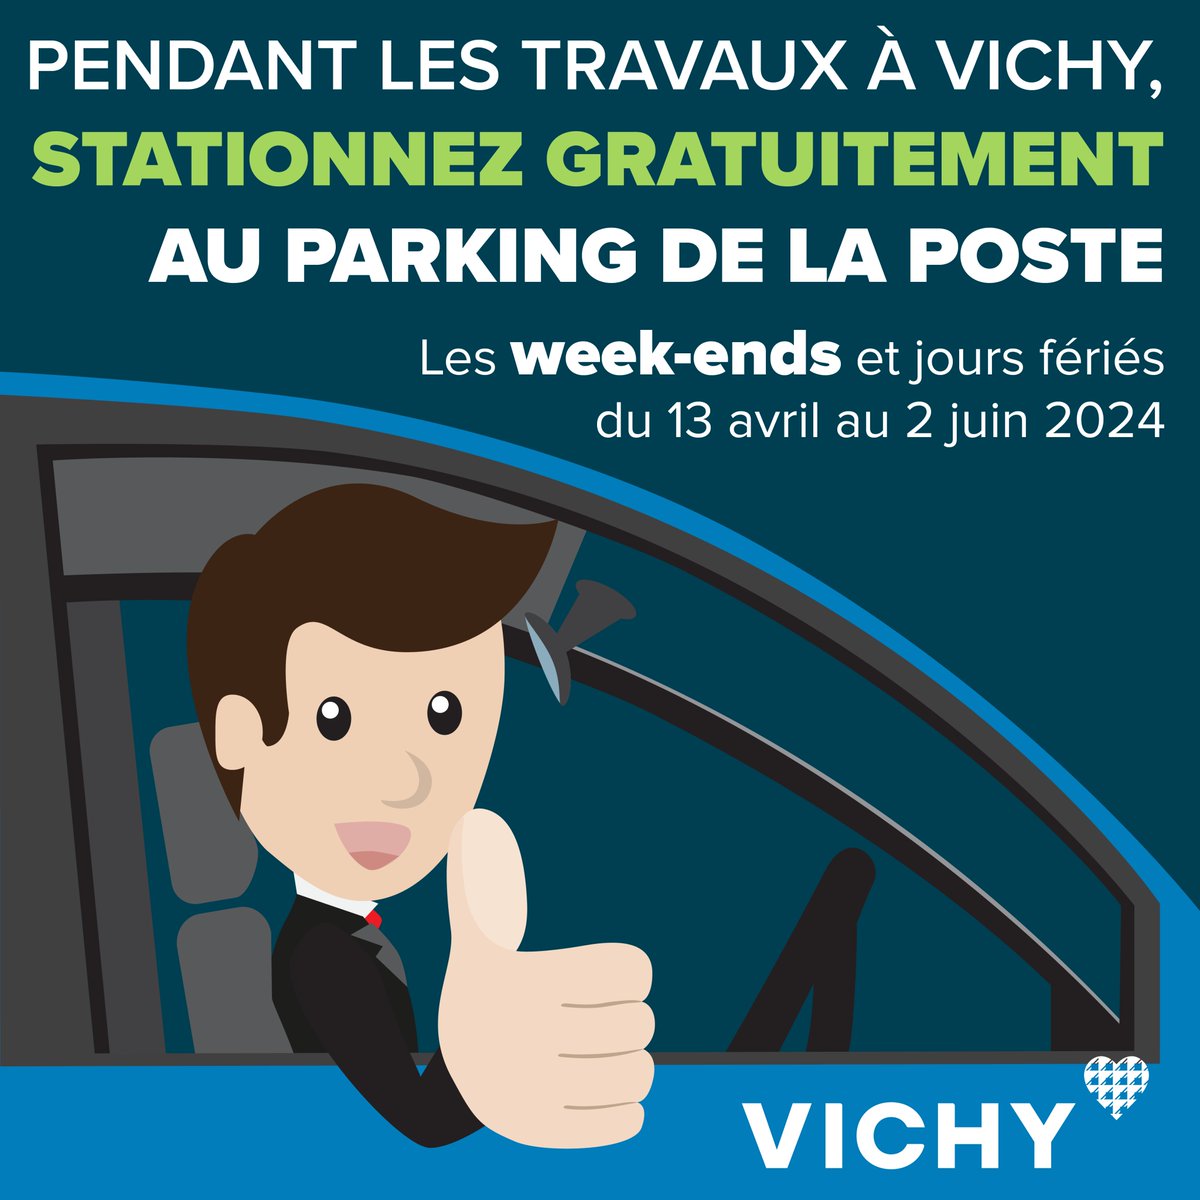 [#Stationnement] 🚗 Du 13 avril au 2 juin 2024, stationnement gratuit au parking de la Poste (weekend-et jours fériés).